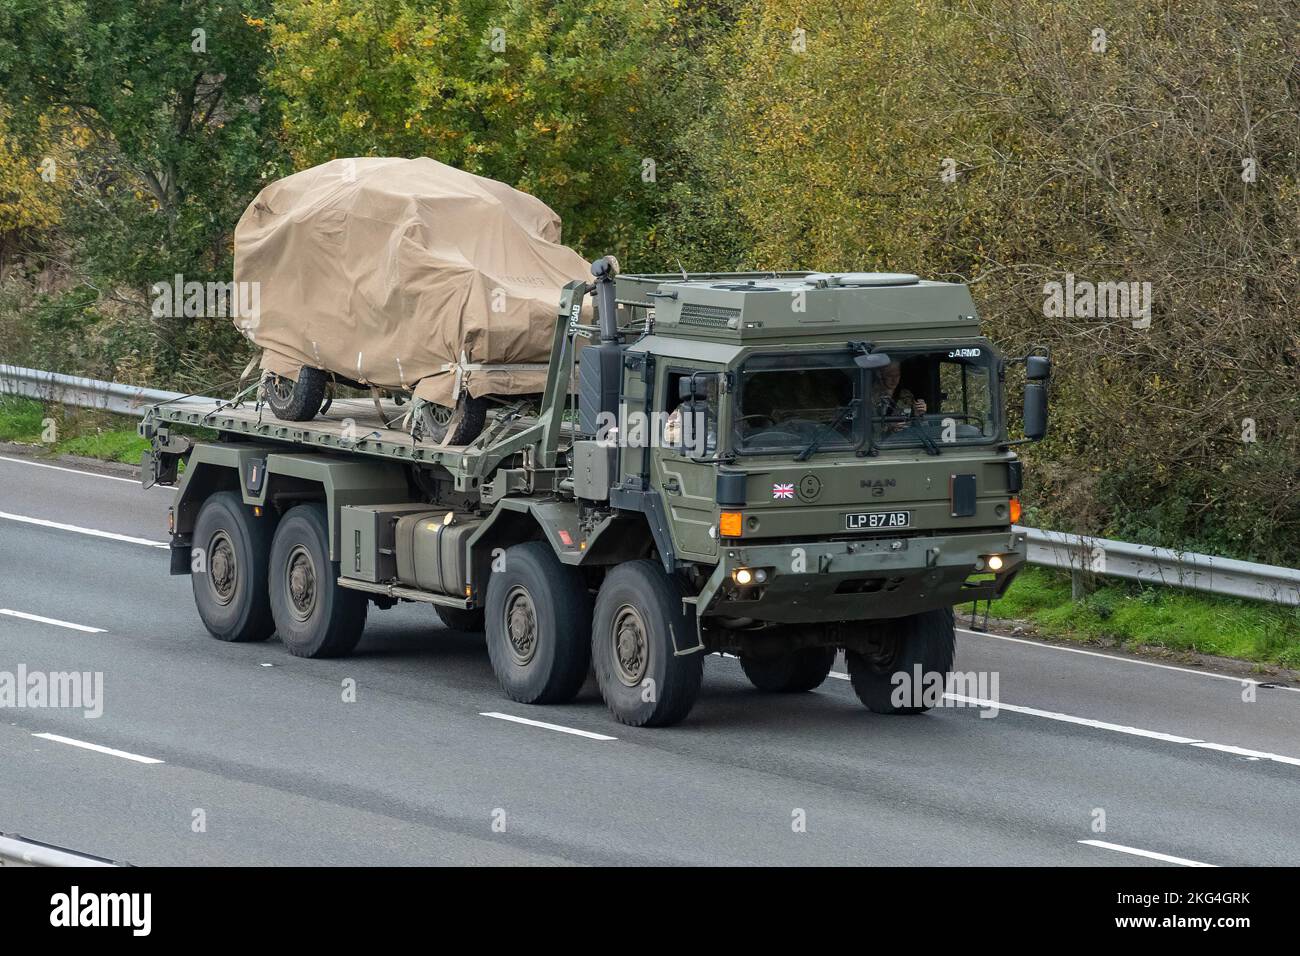 ARMEEMANN-Logistikfahrzeug, das ein weiteres Militärfahrzeug entlang der Autobahn M3, England, Großbritannien, transportiert Stockfoto